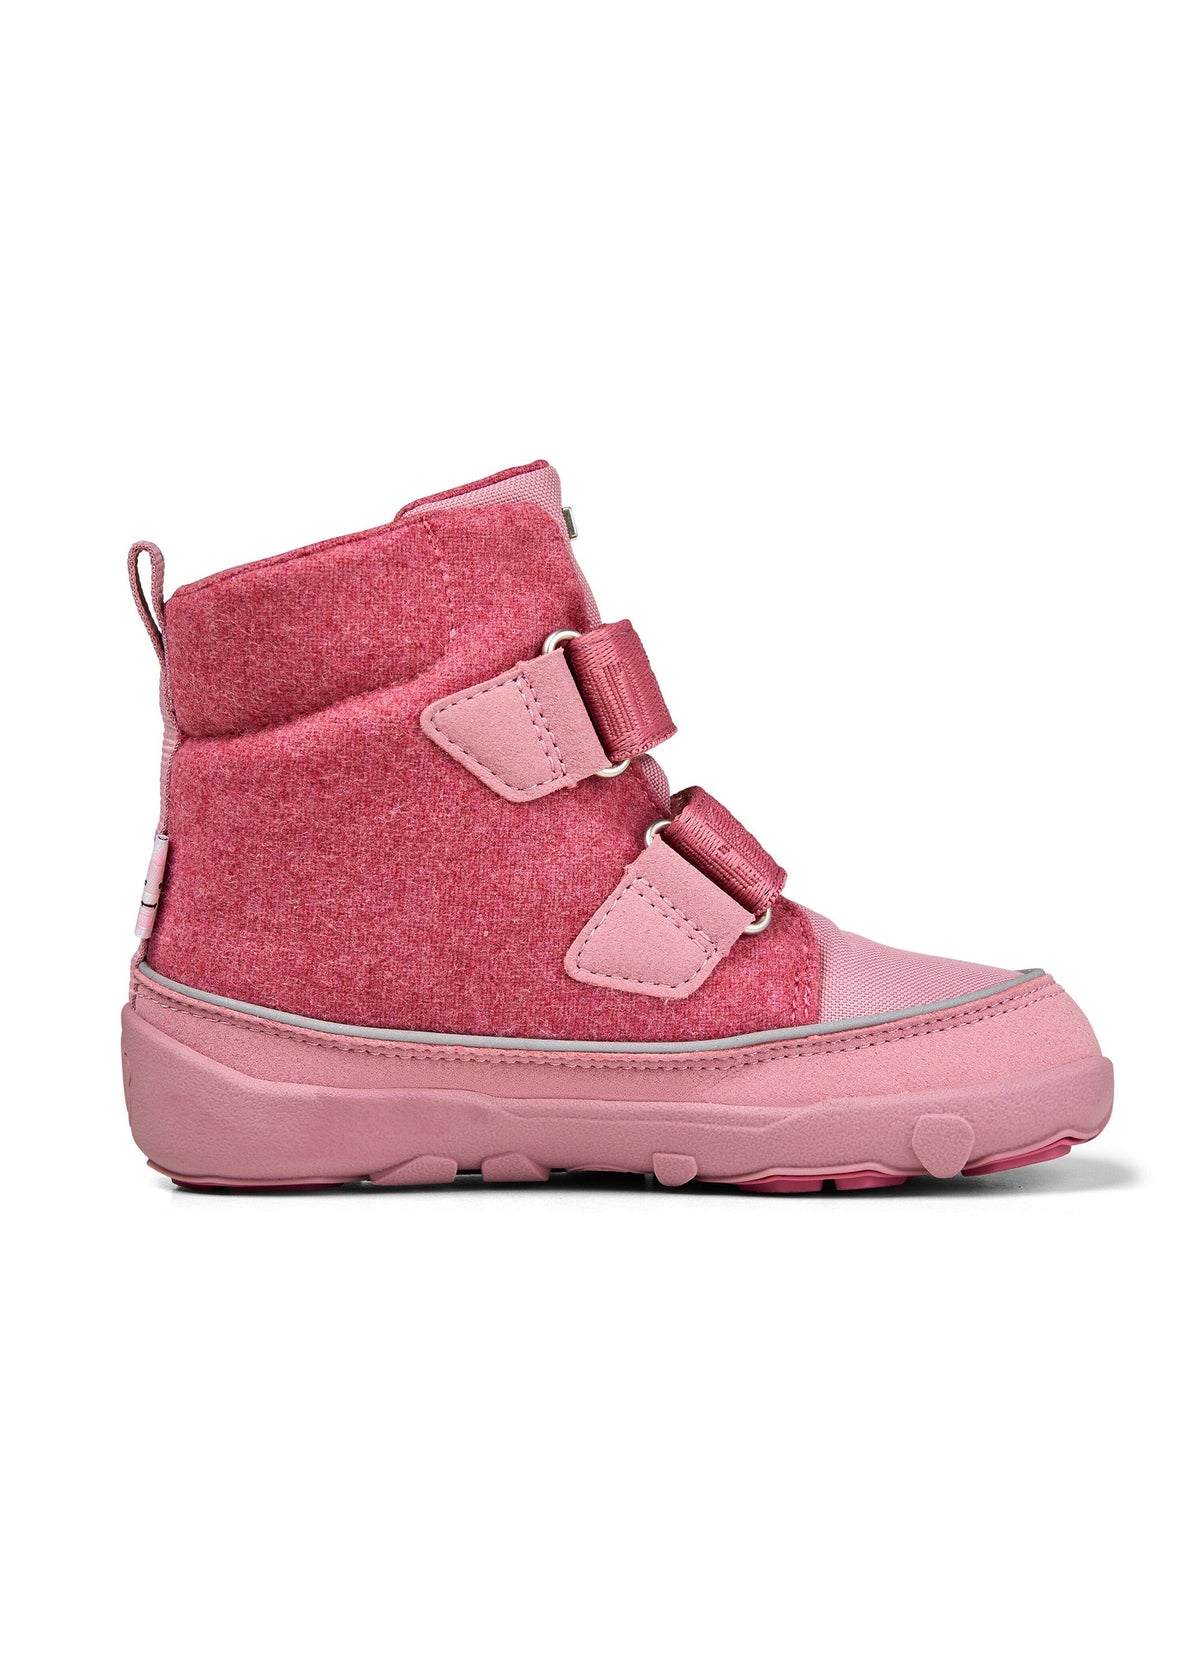 Barfotaskor för barn - Wool Comfy Unicorn, vinterskor med TEX-membran - rosa, ull